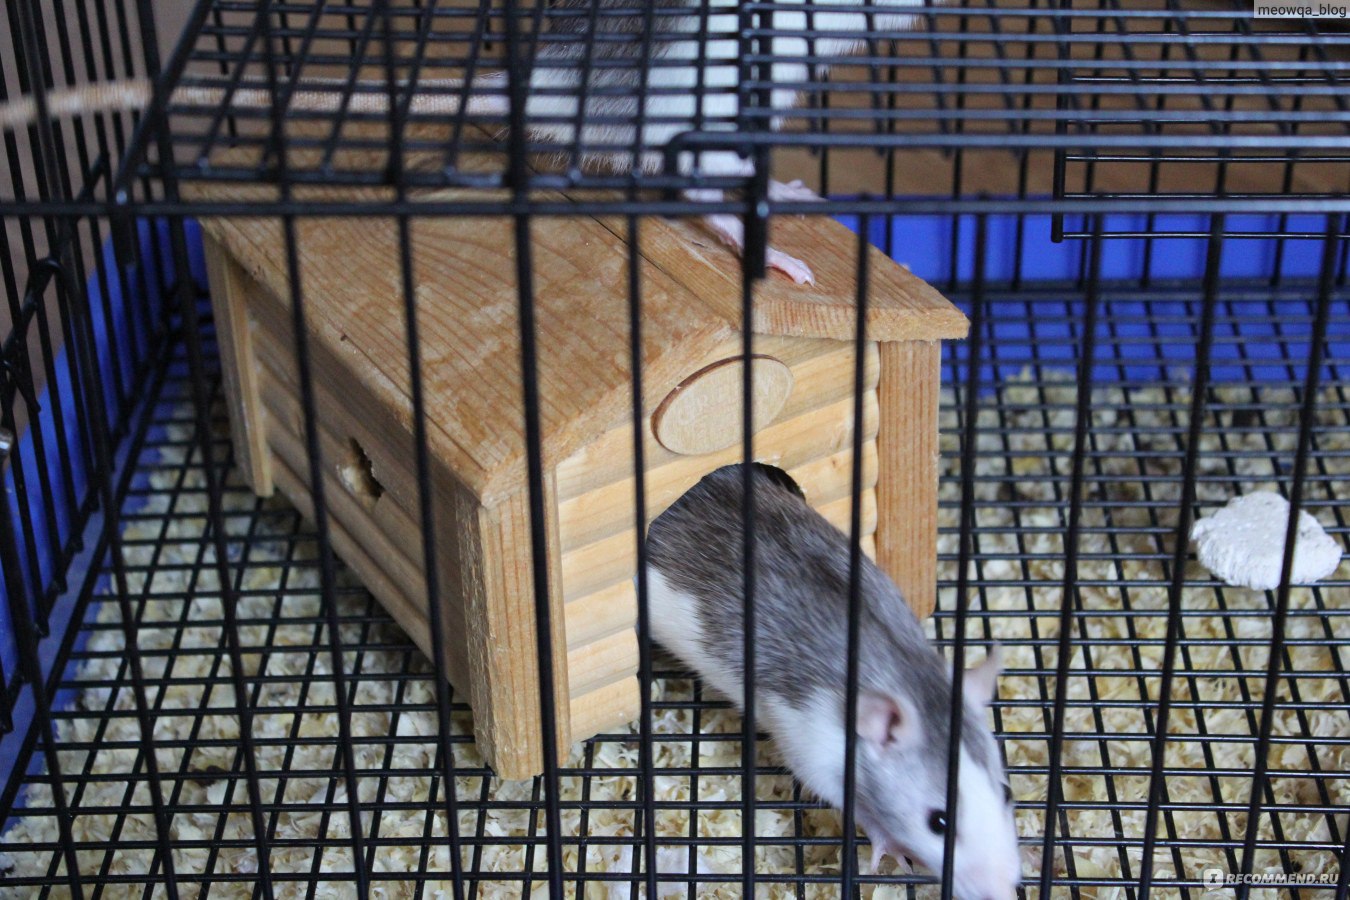 Домашние крысы — описание, уход, плюсы и минусы питомца